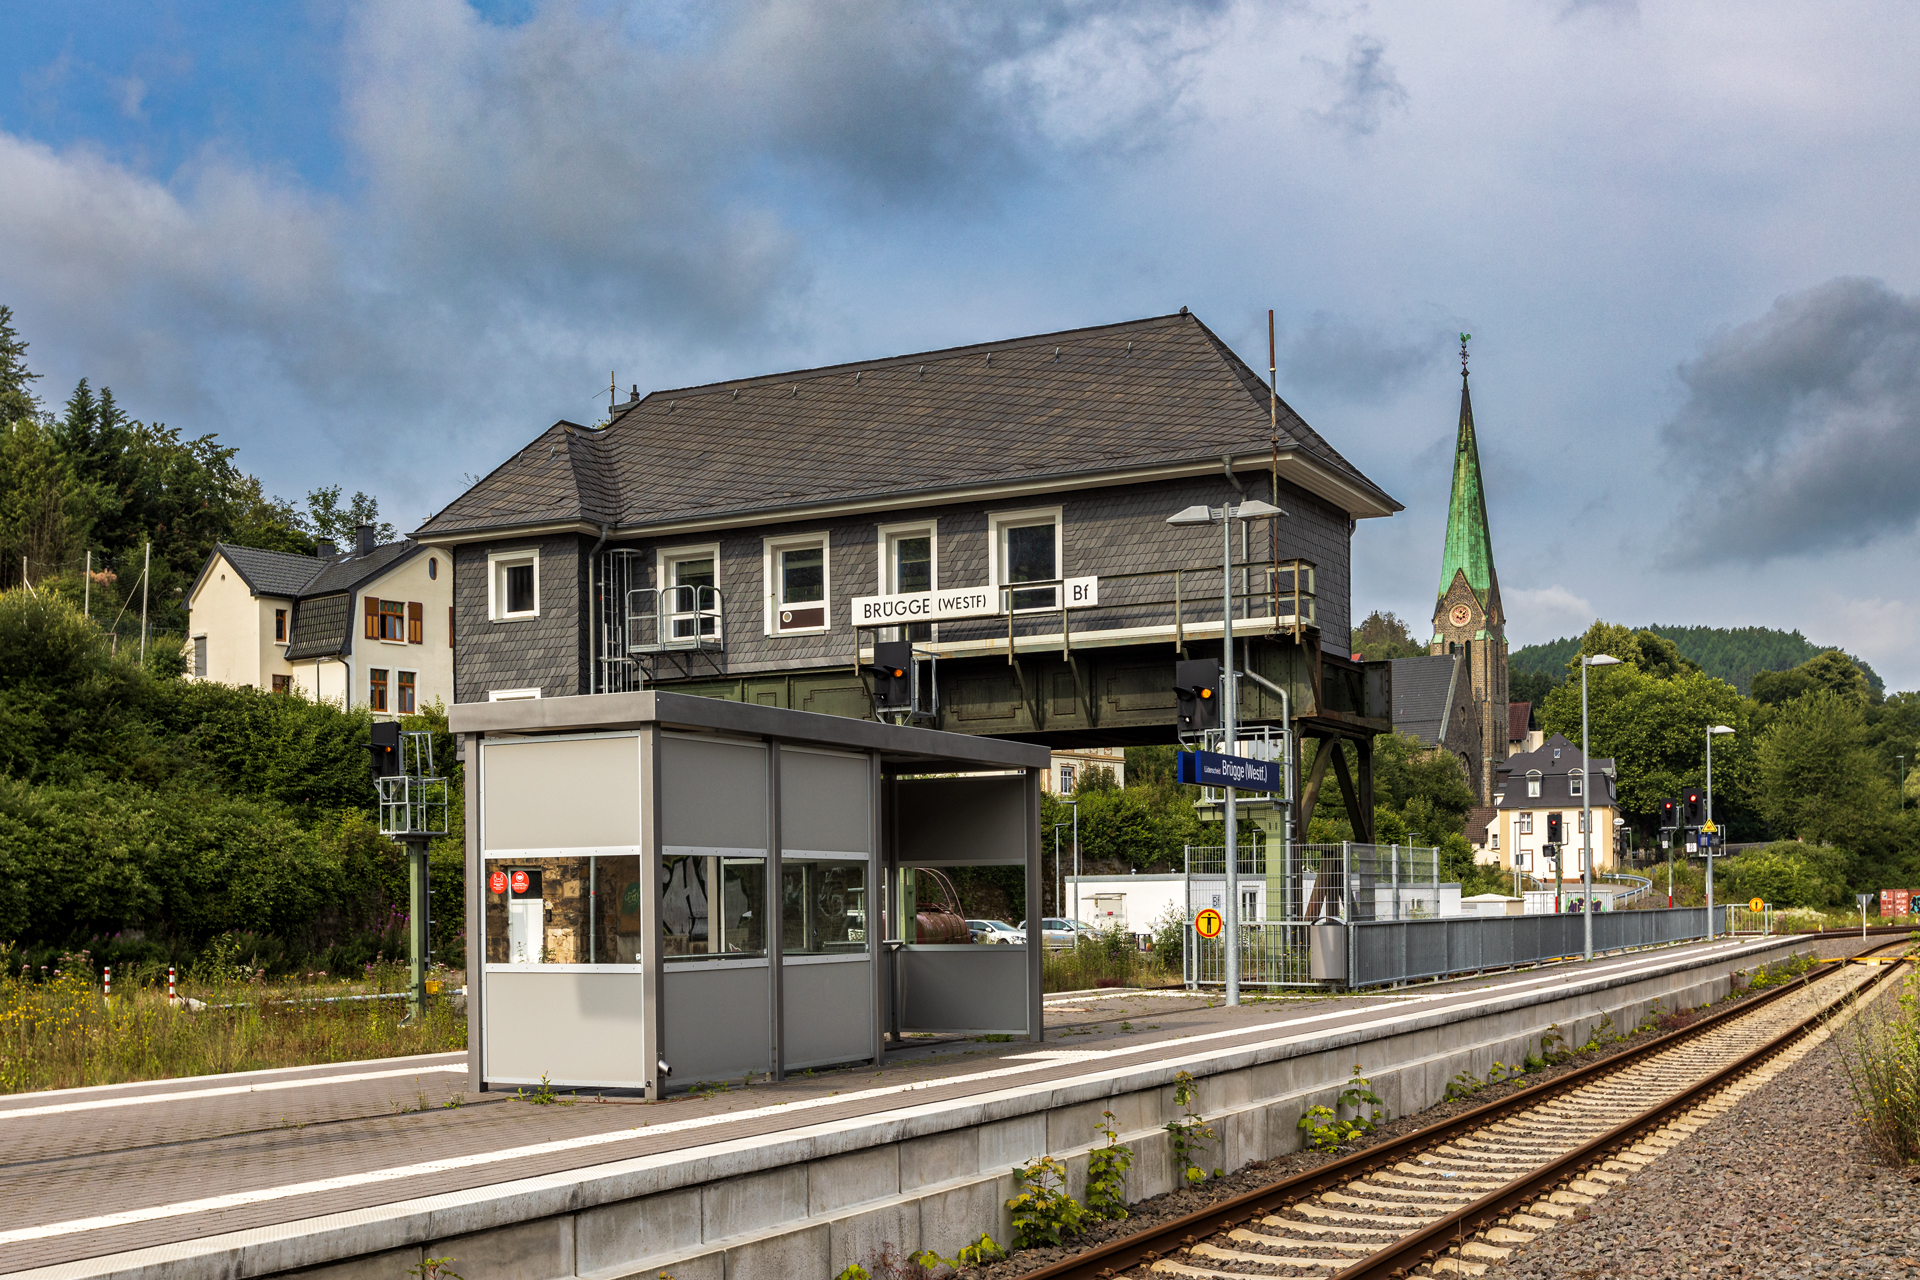 Bahnhof Brügge-Lüdenscheid